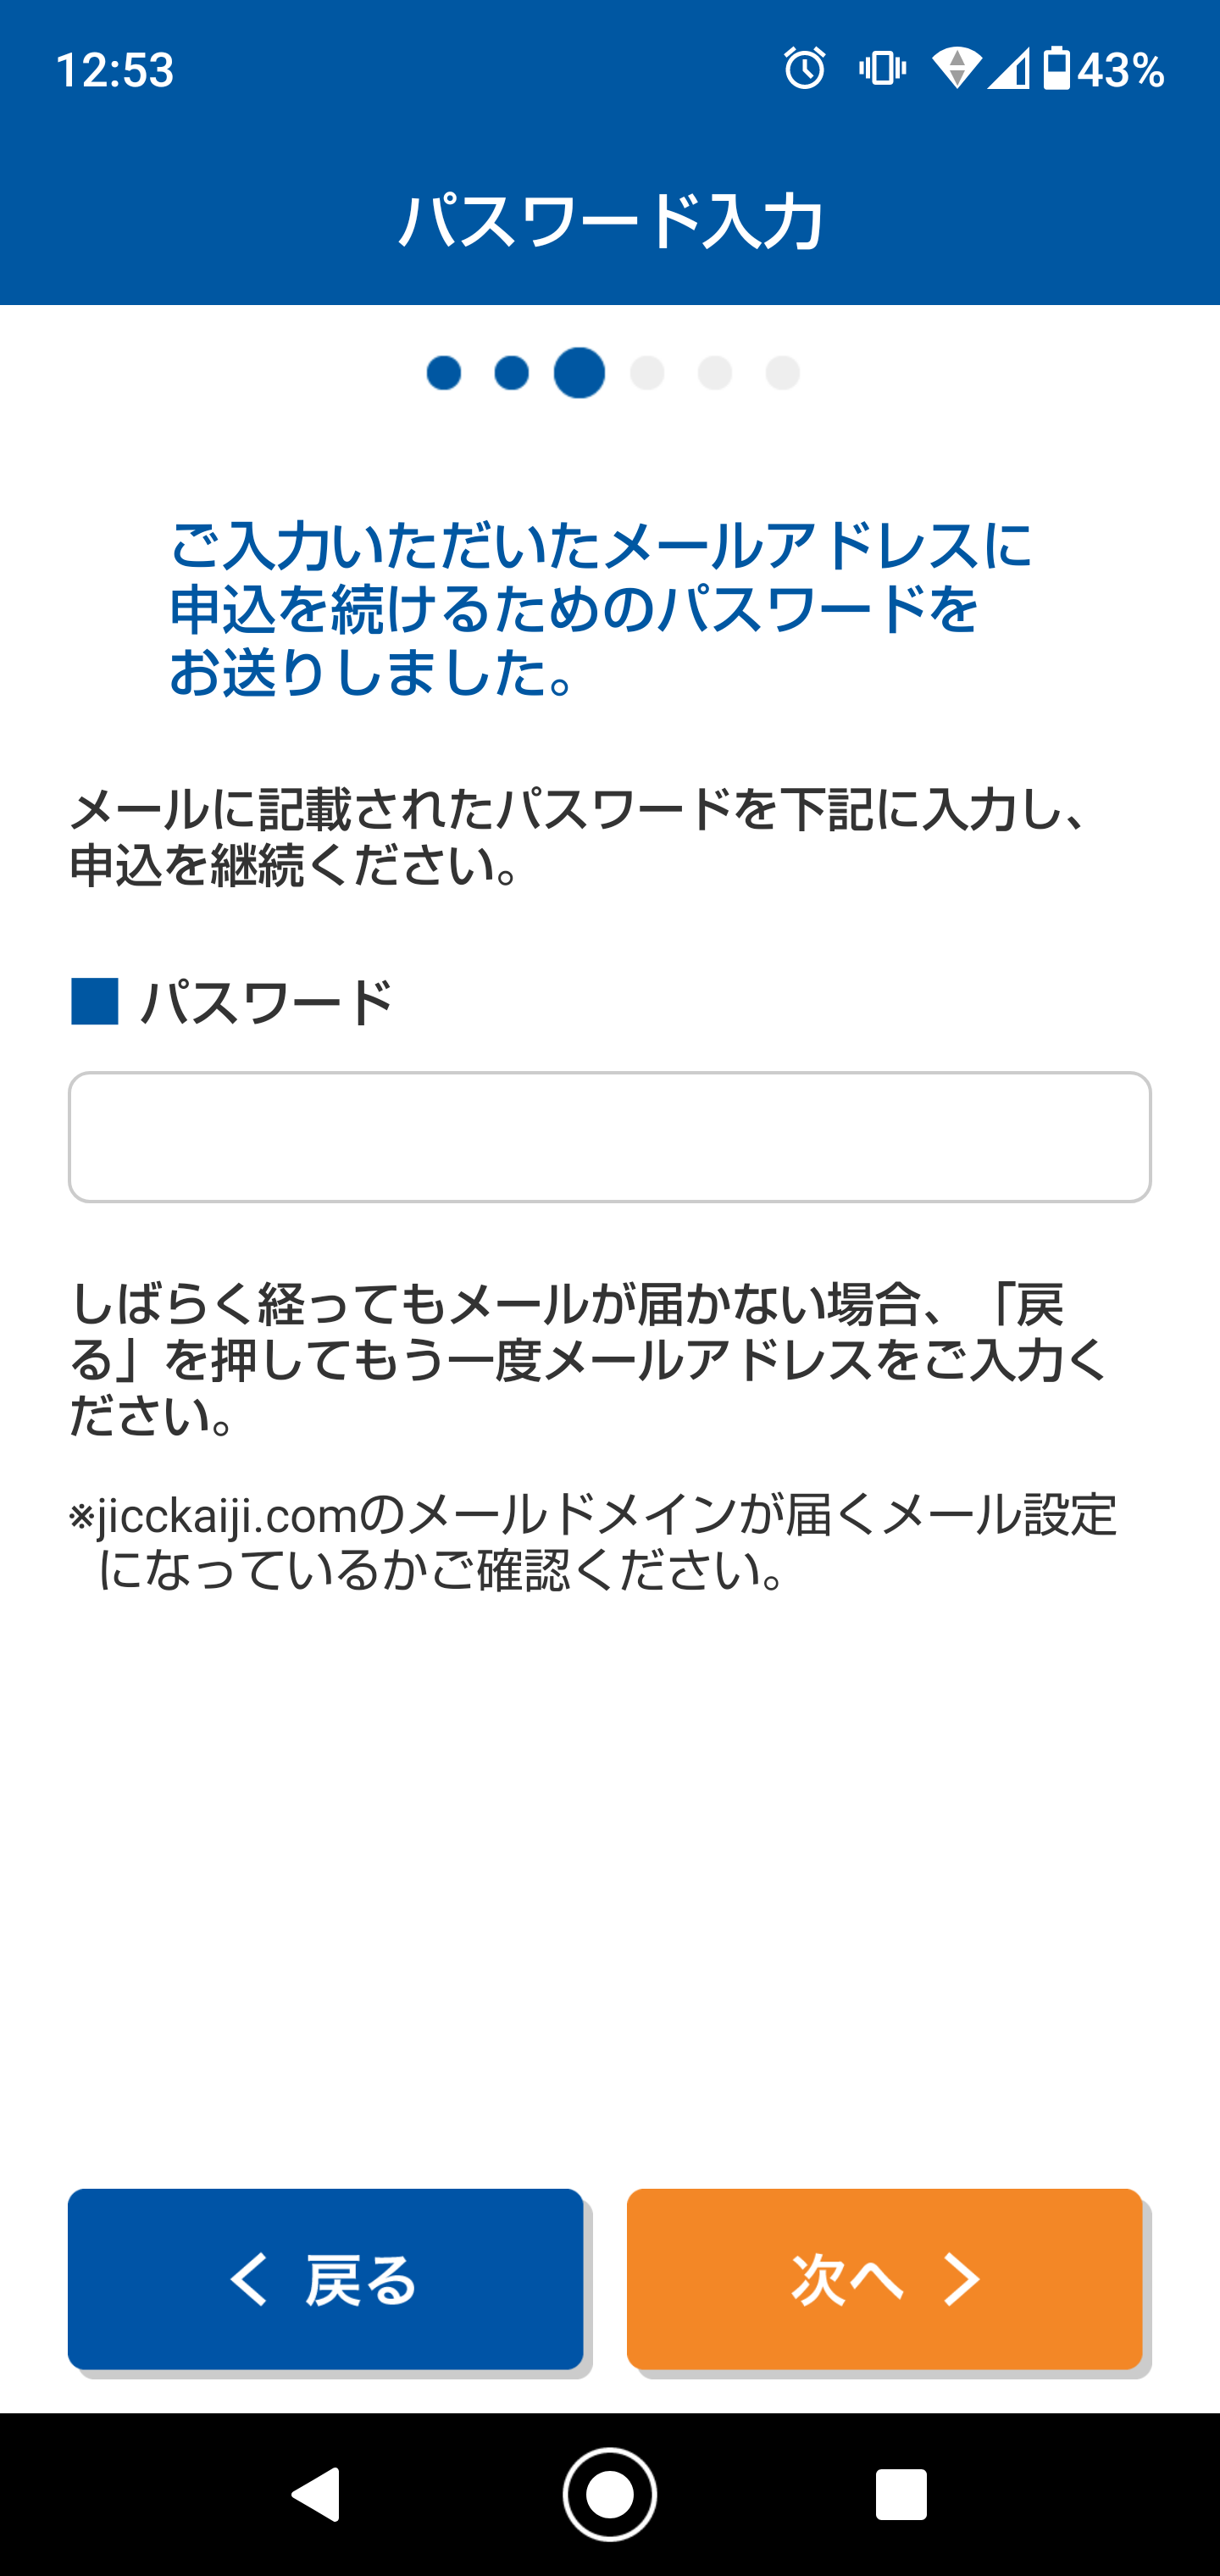 JICCスマートフォン開示受付サービスパスワード入力画面